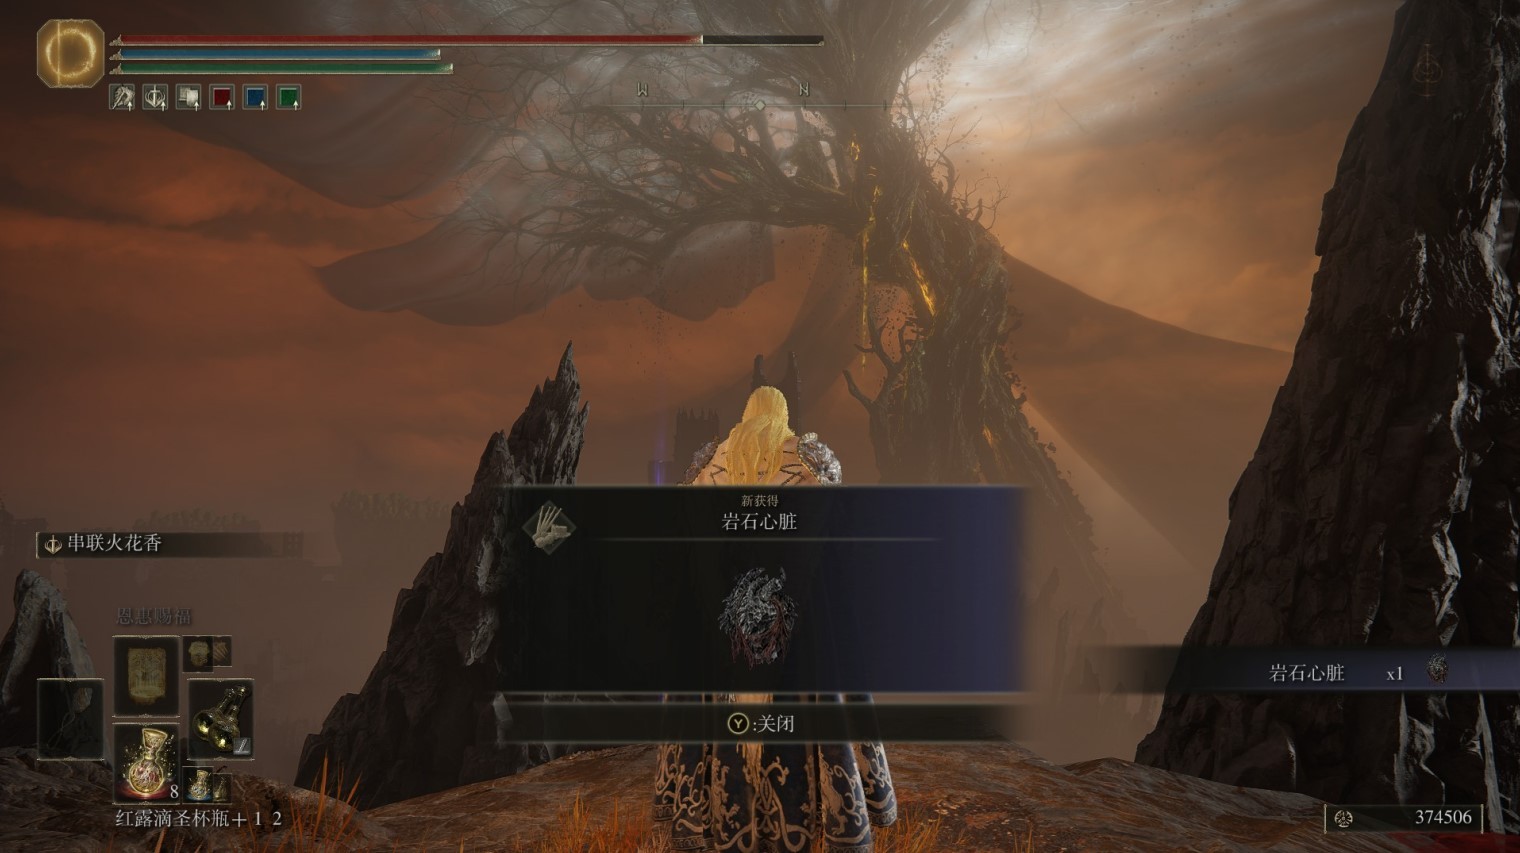 《艾爾登法環》黃金樹之影DLC繪畫龍之境界寶藏地點